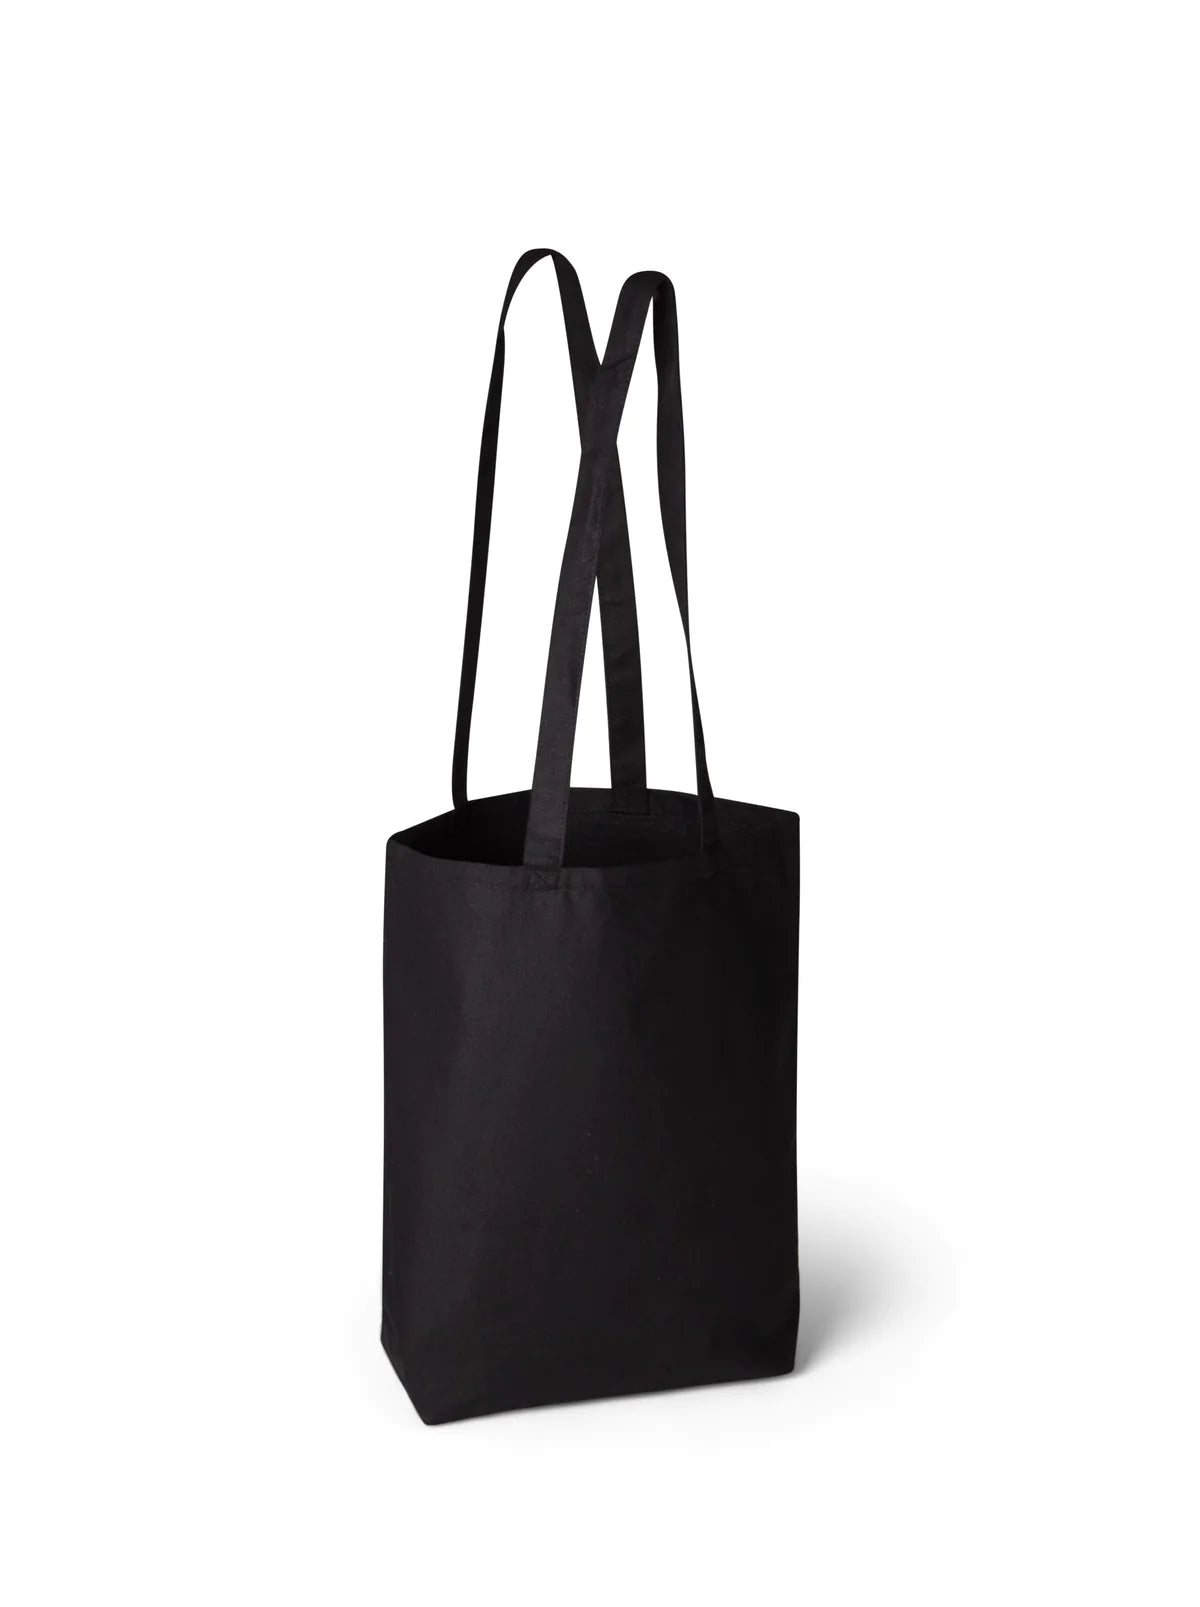 Long handle heavy shopper bag